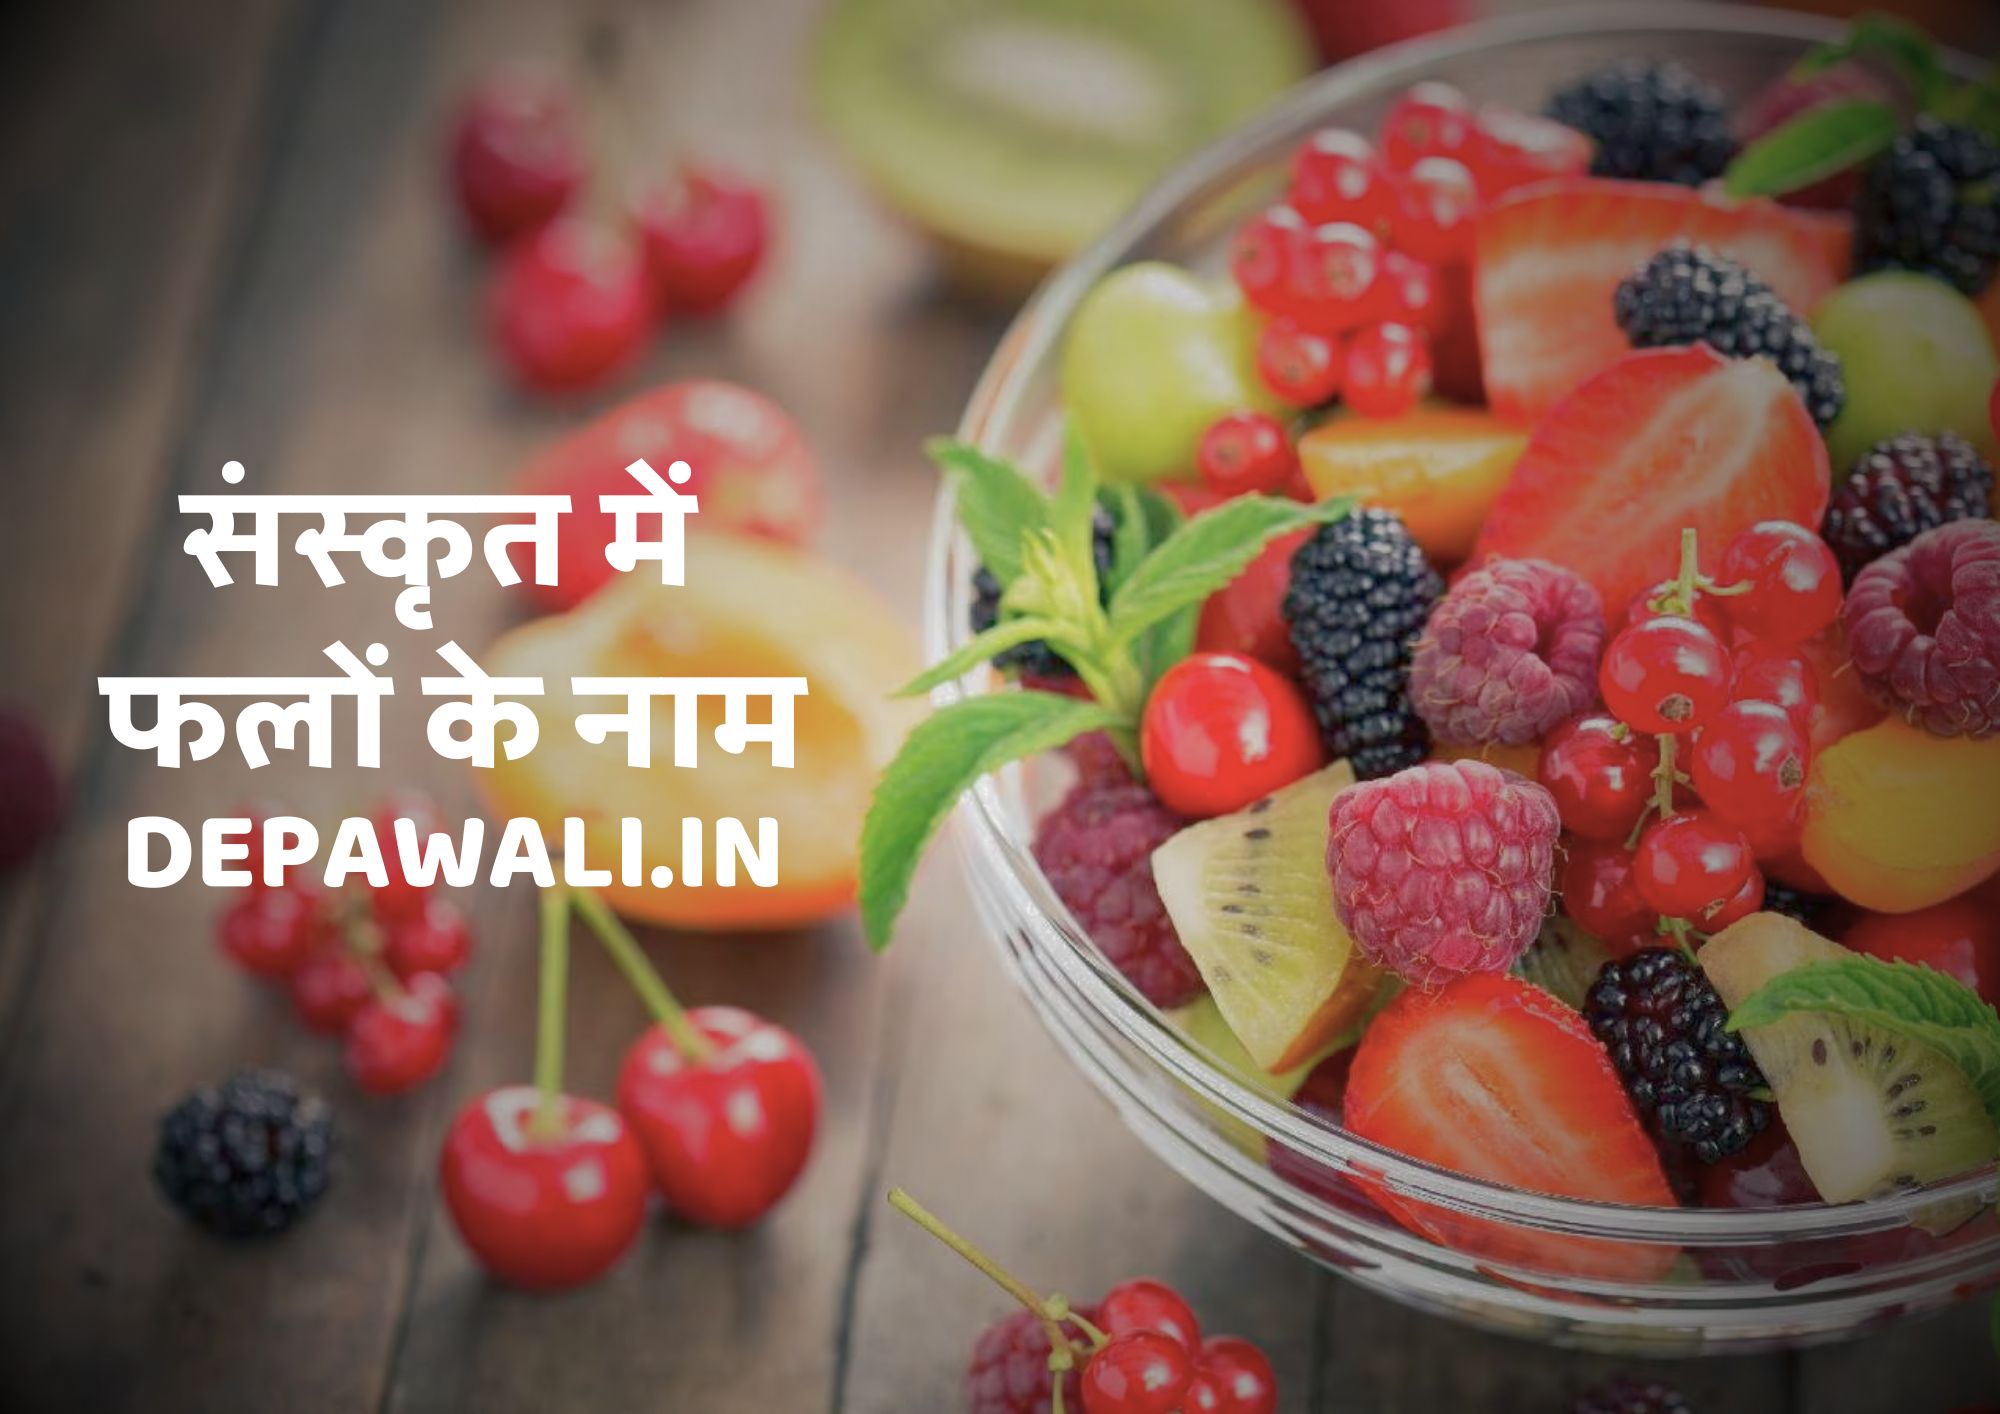 संस्कृत में फलों के नाम (Name Of Fruits In Sanskrit Language) - Sanskrit Me Fruits Name - All Fruits Name In Sanskrit And Hindi